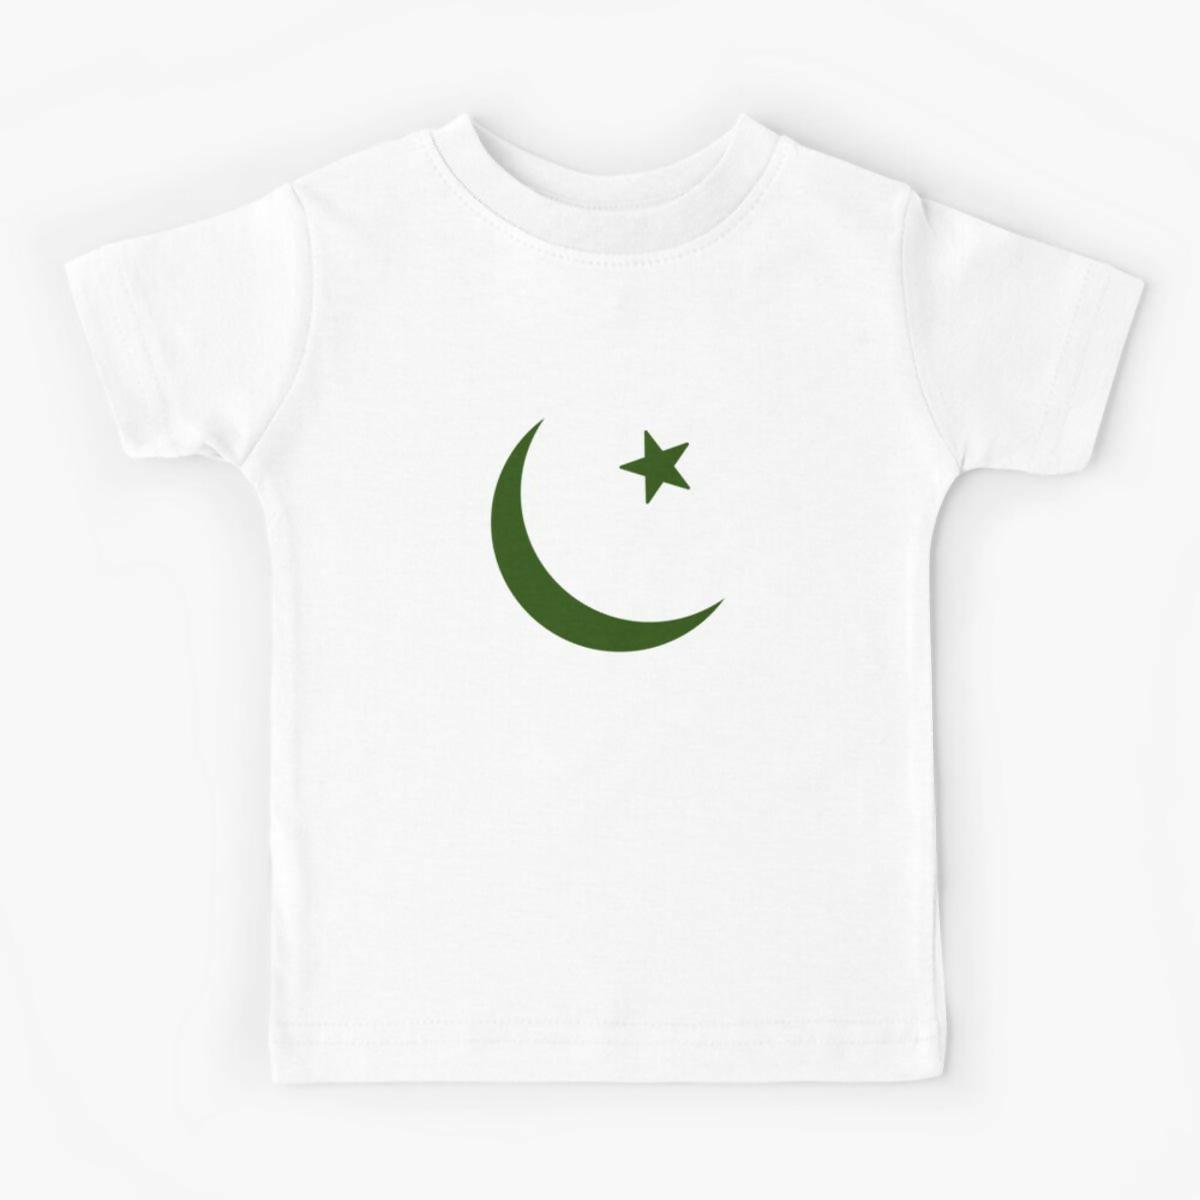 Khanani's Kids Printed tshirts for 14 August - ValueBox